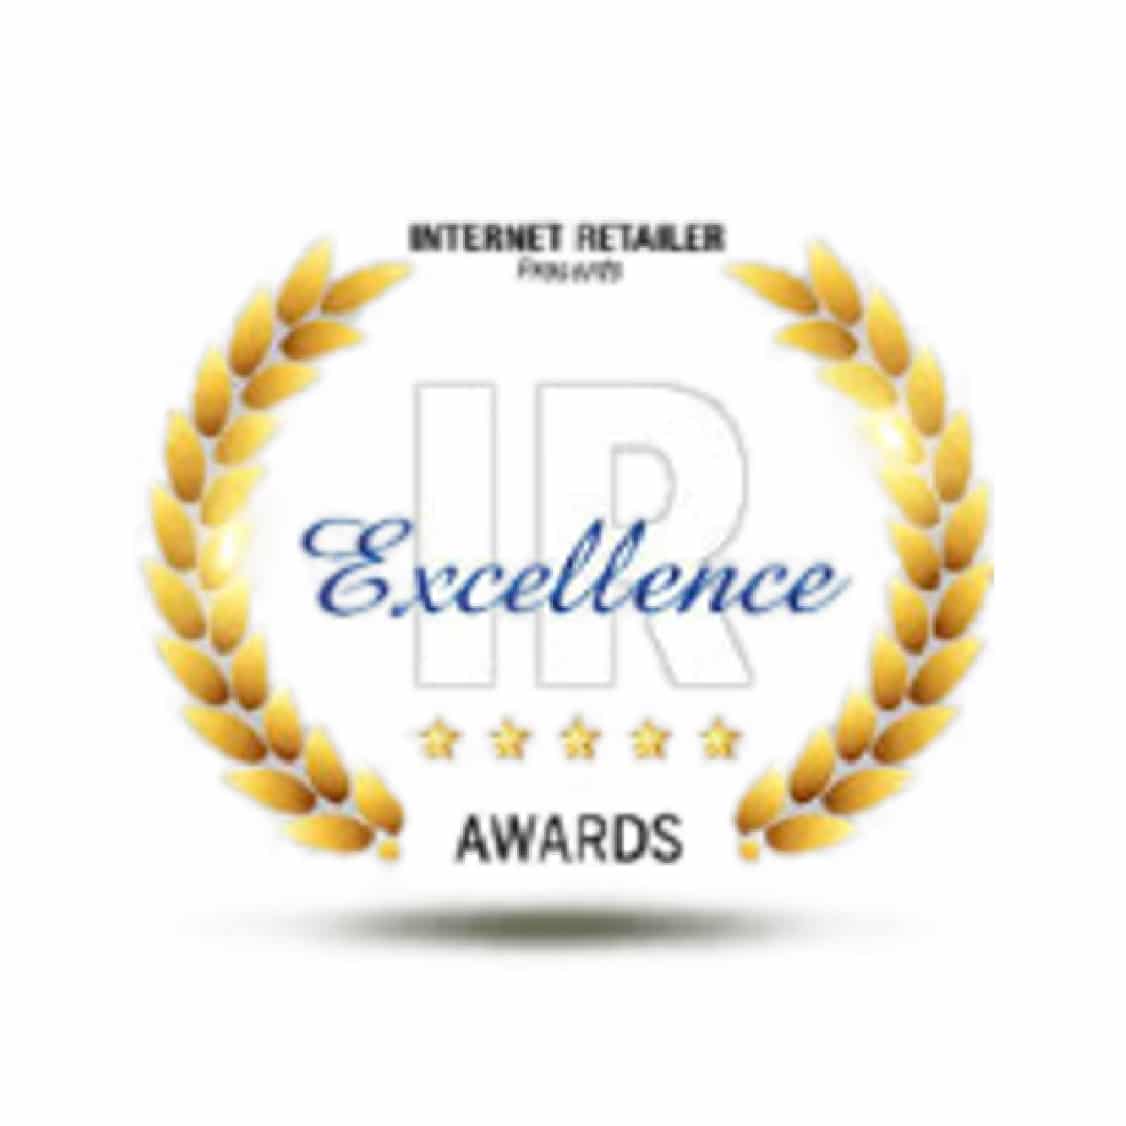 Media Horizons is an Internet Retailer award winner.